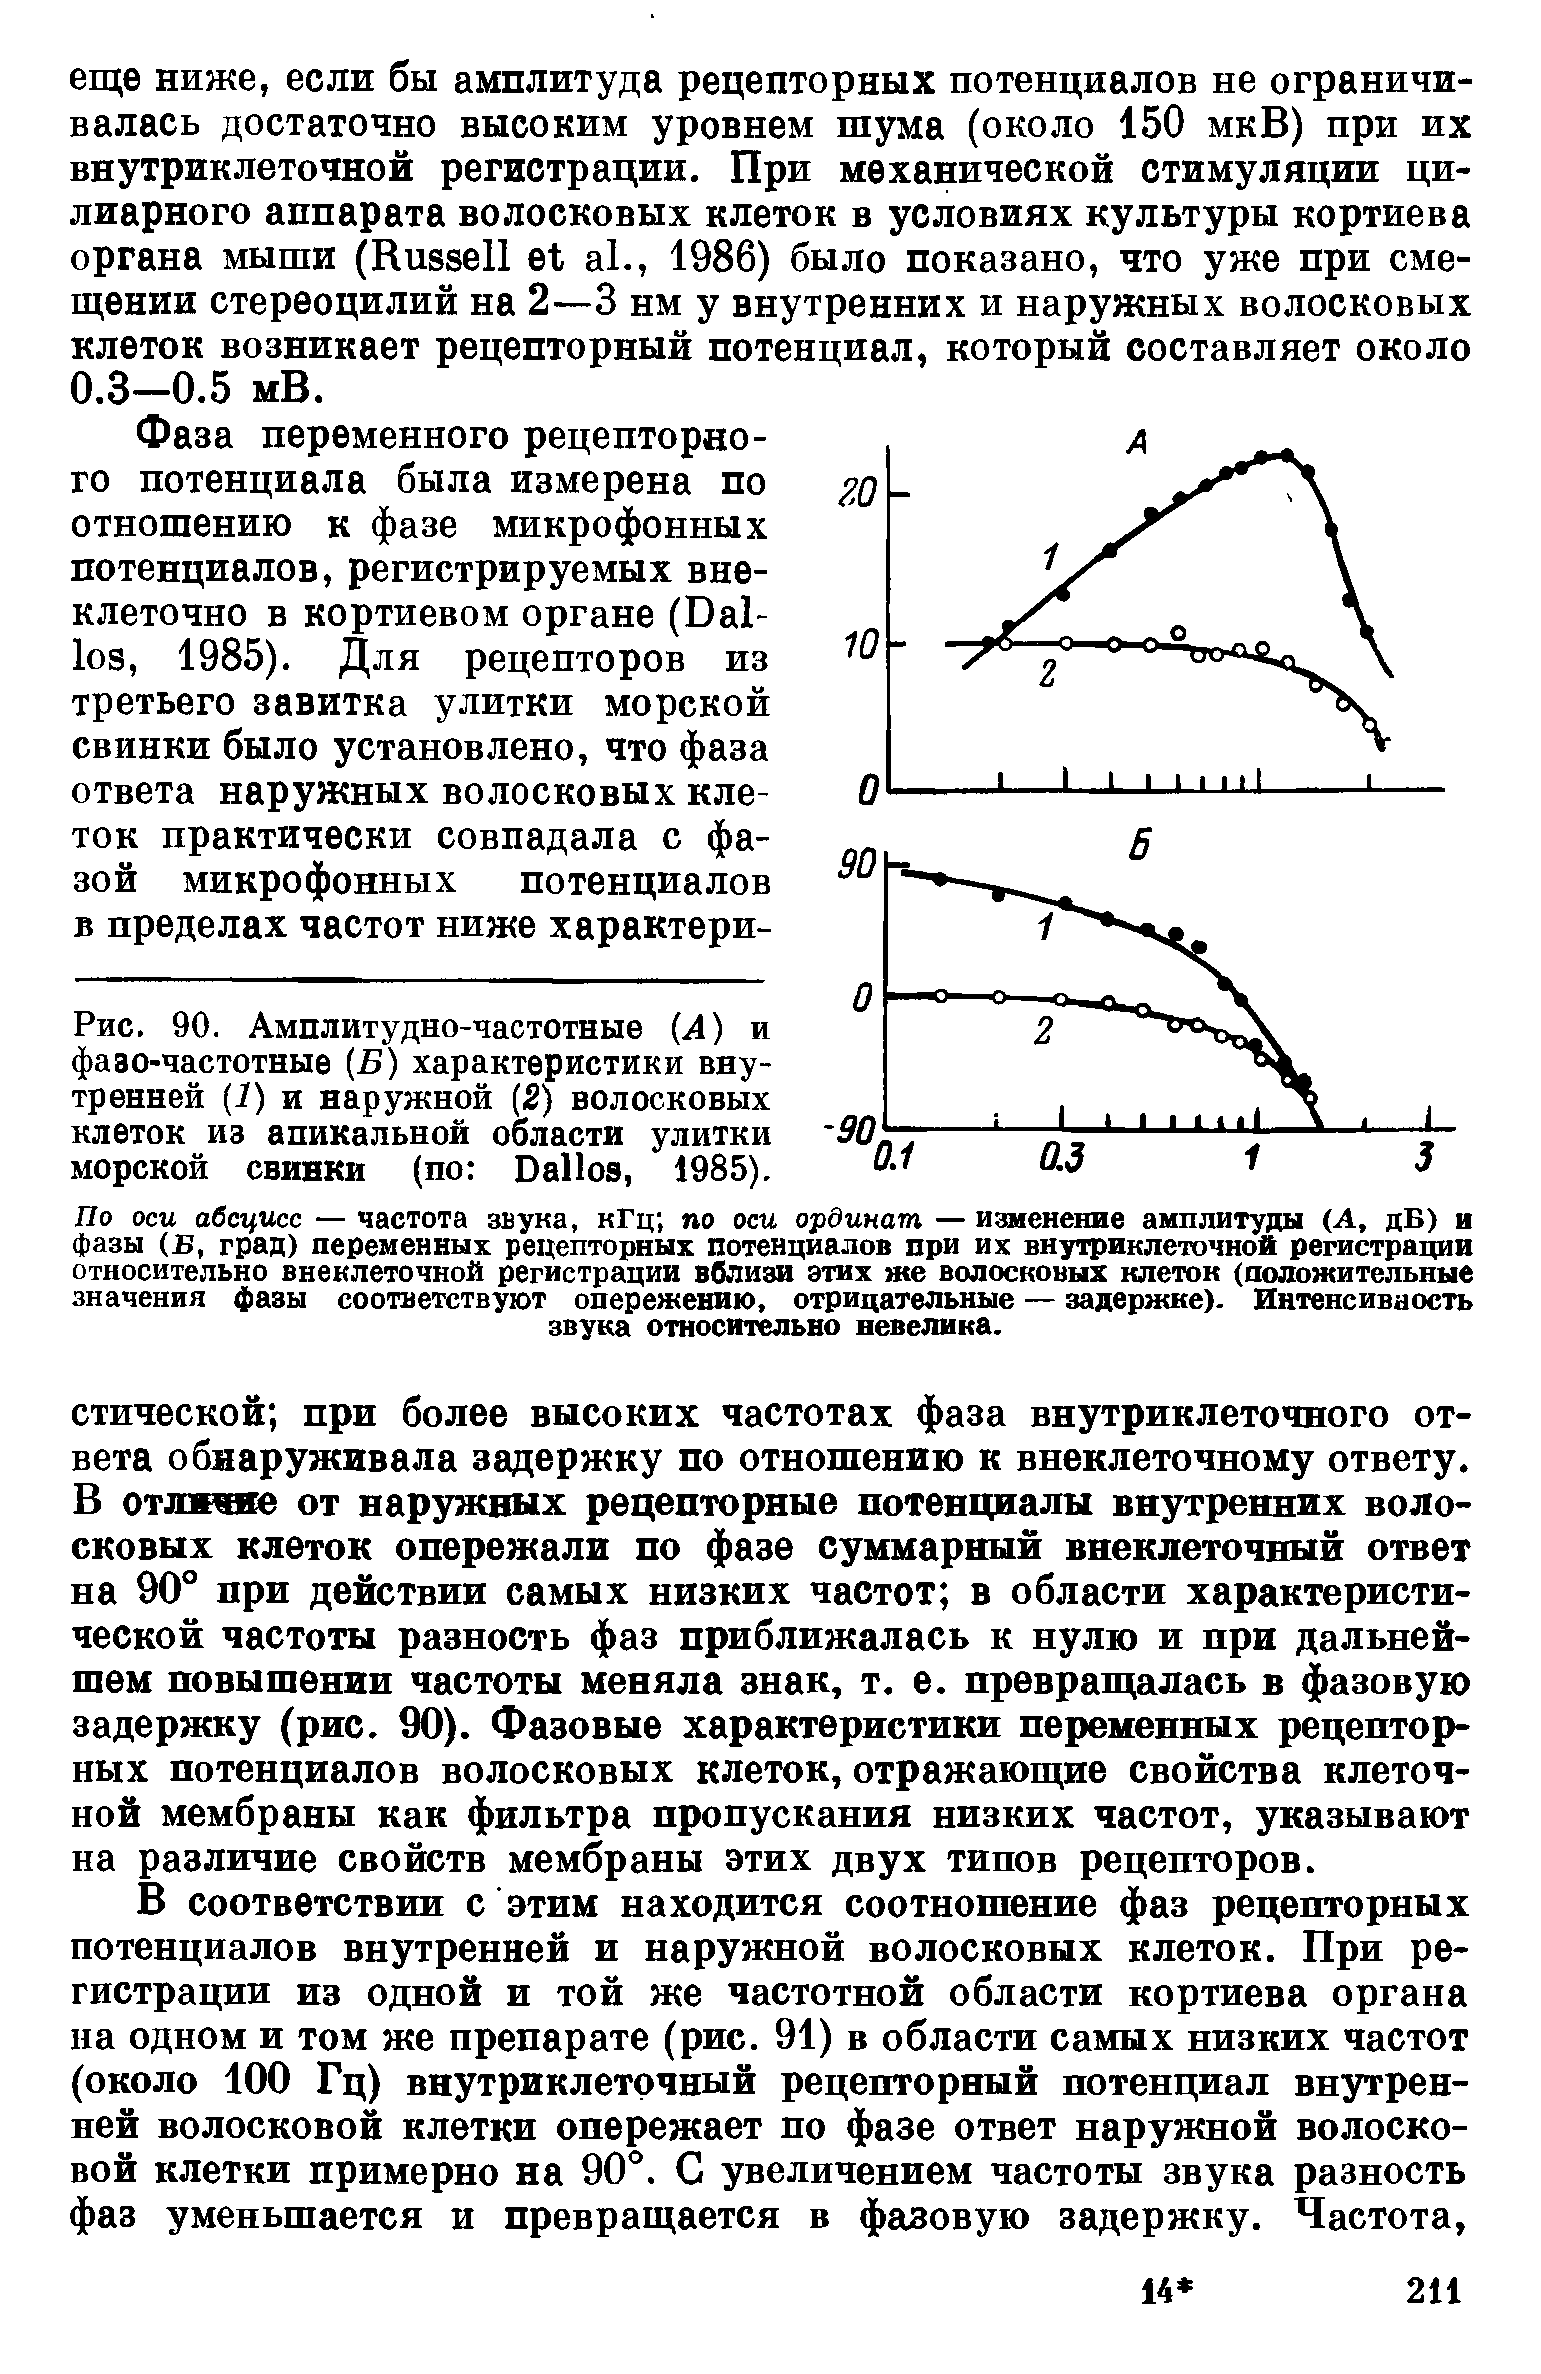 Рис. 90. Амплитудно-частотные (А) и фазо-частотные (Б) характеристики внутренней (7) и наружной (2) волосковых клеток из апикальной области улитки морской свинки (по D , 1985).